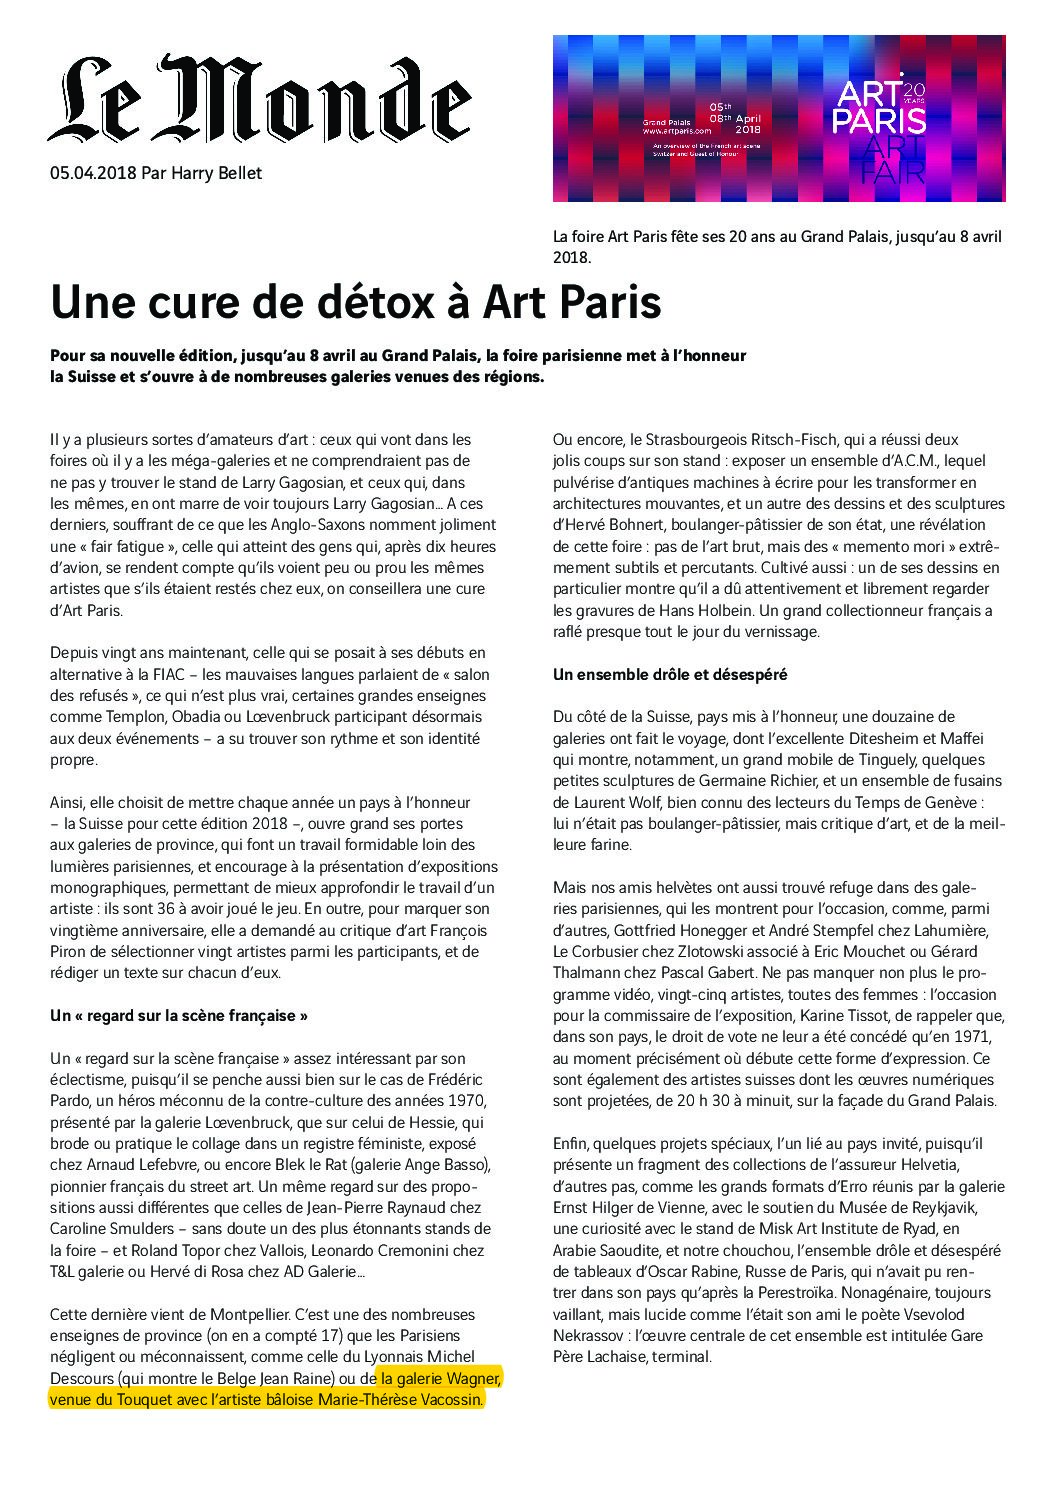 Read more about the article Le Monde –Art Paris Art Fair